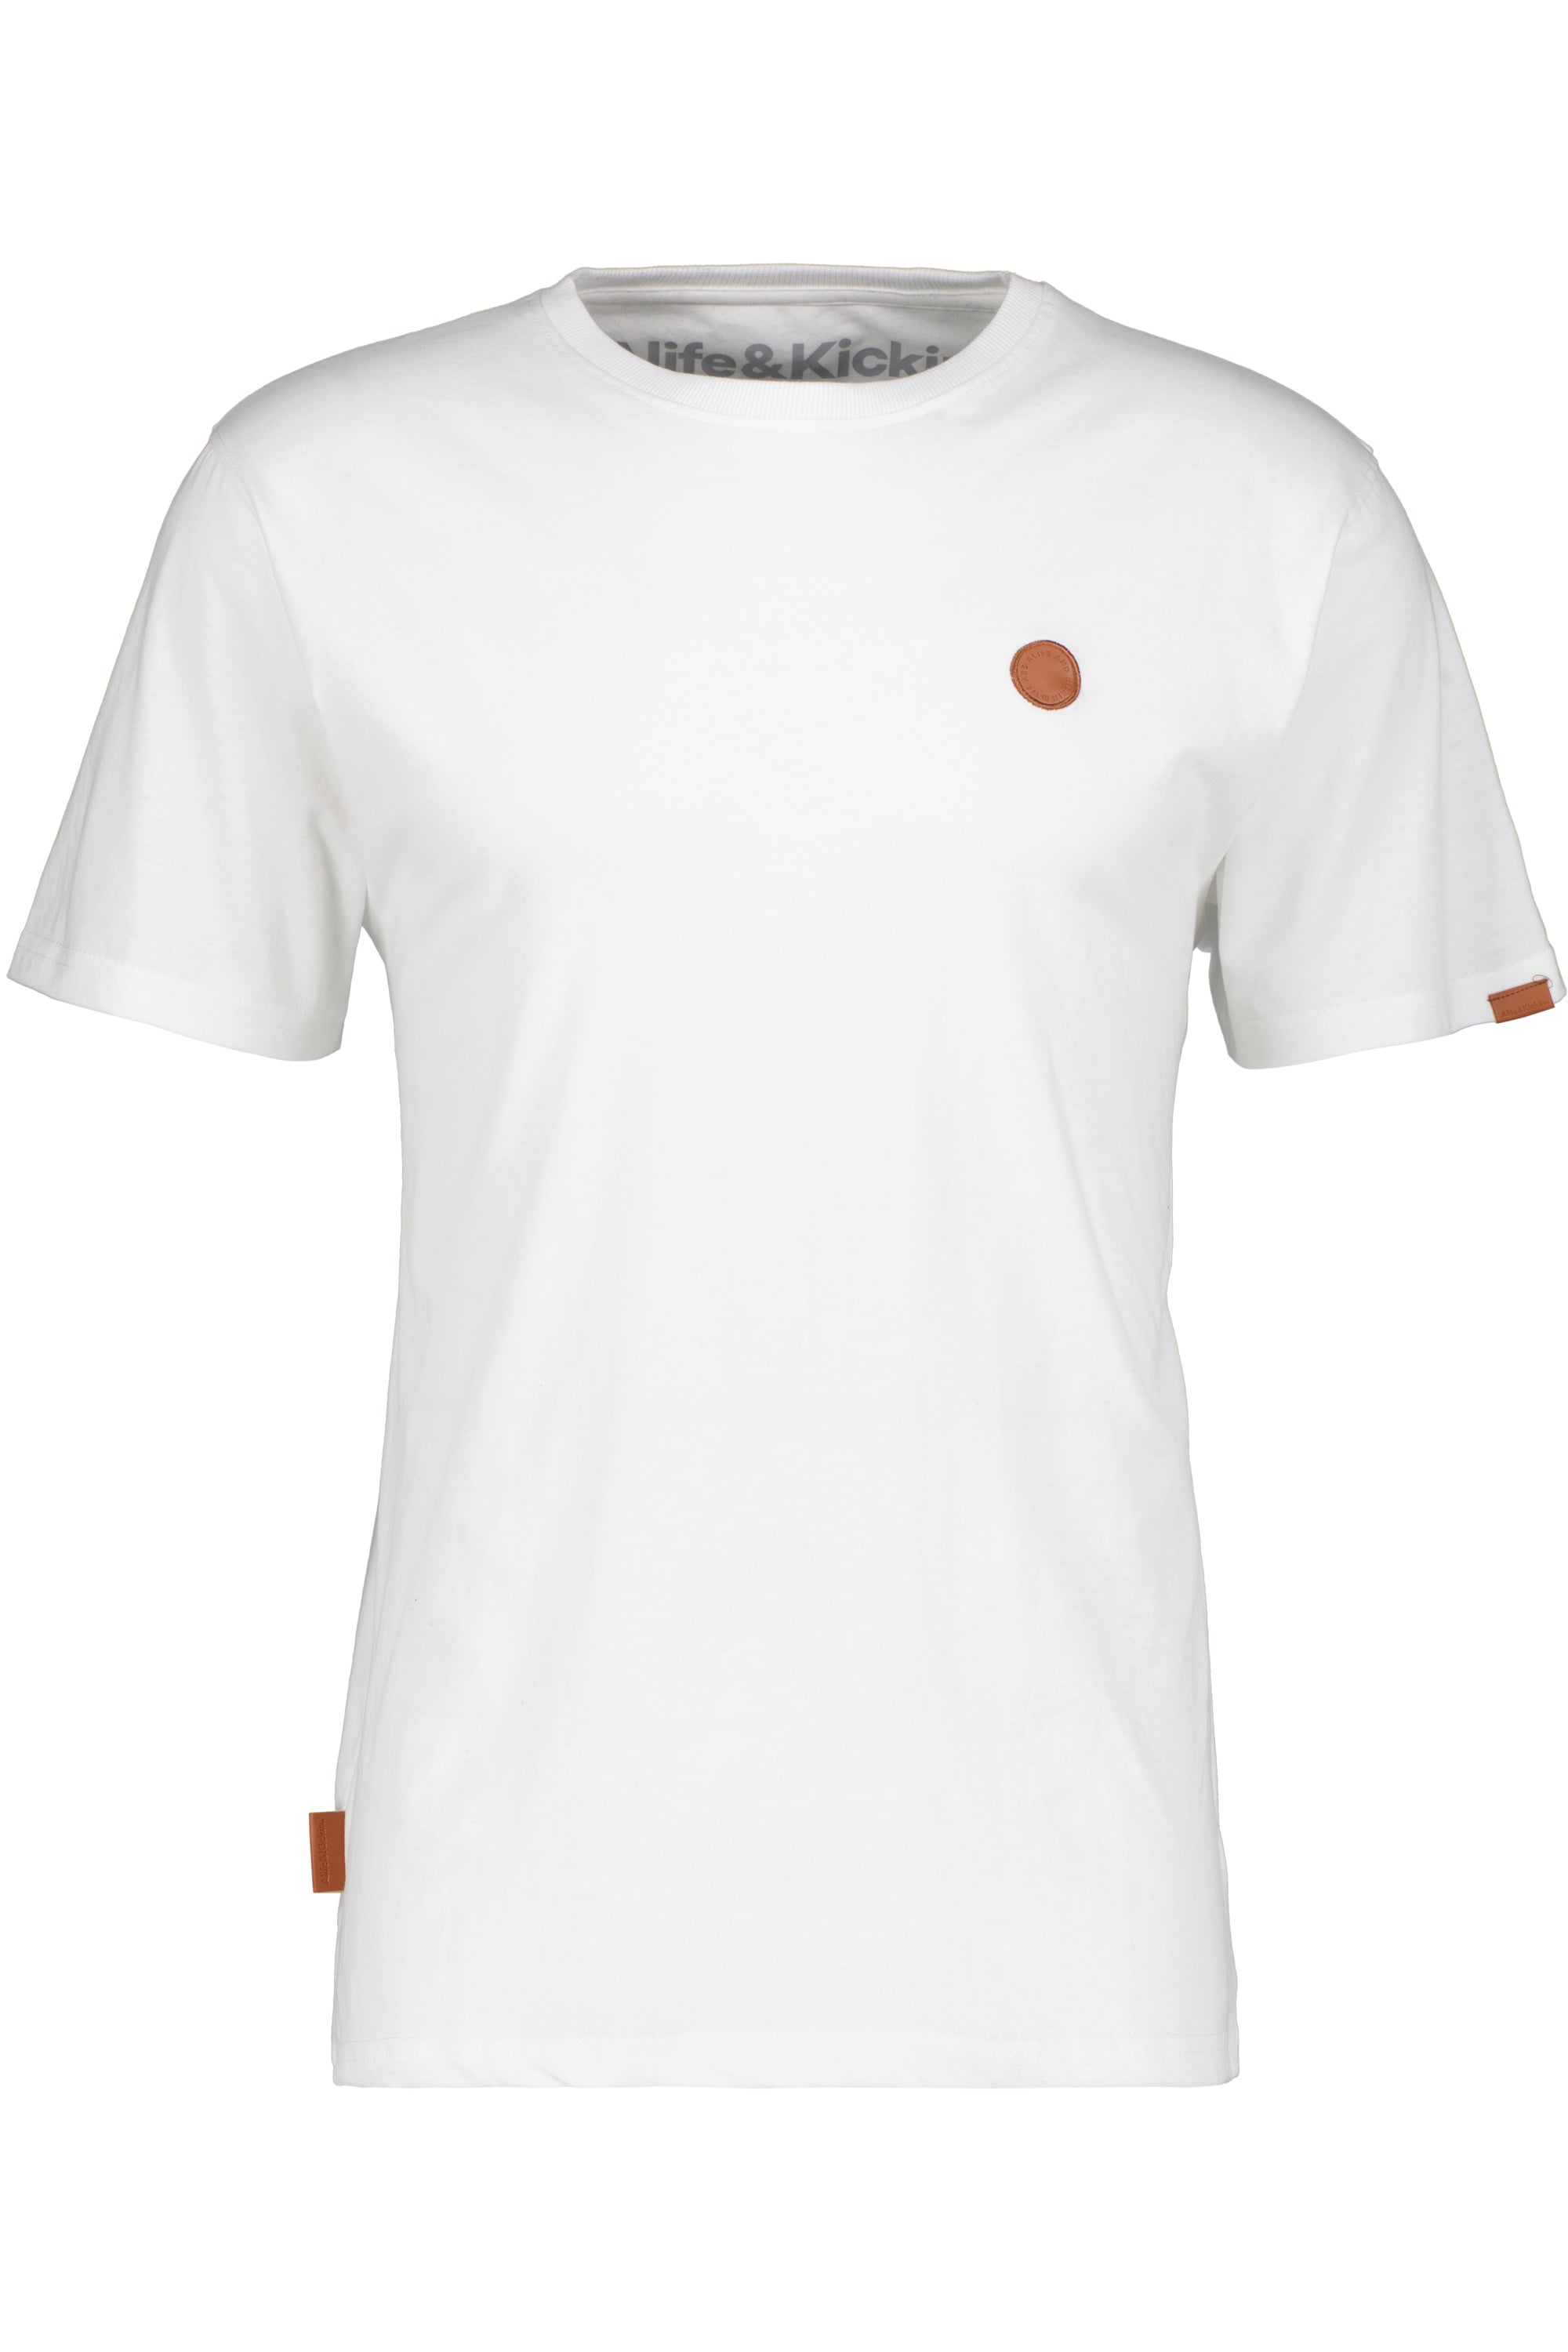 Herren T-Shirt MaddoxAK Hochwertig und vielseitig Weiß